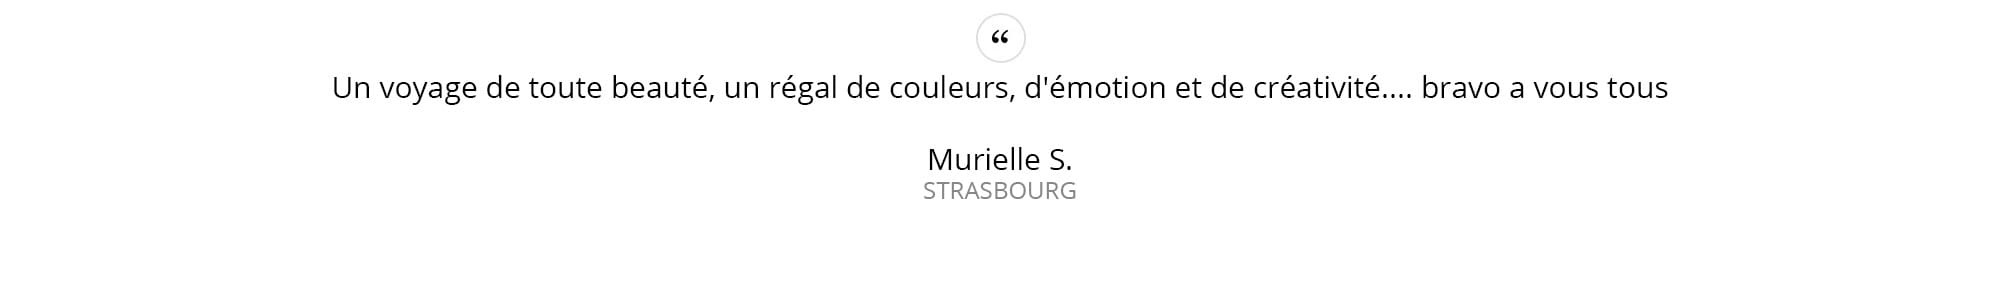 Murielle-S.---STRASBOURG